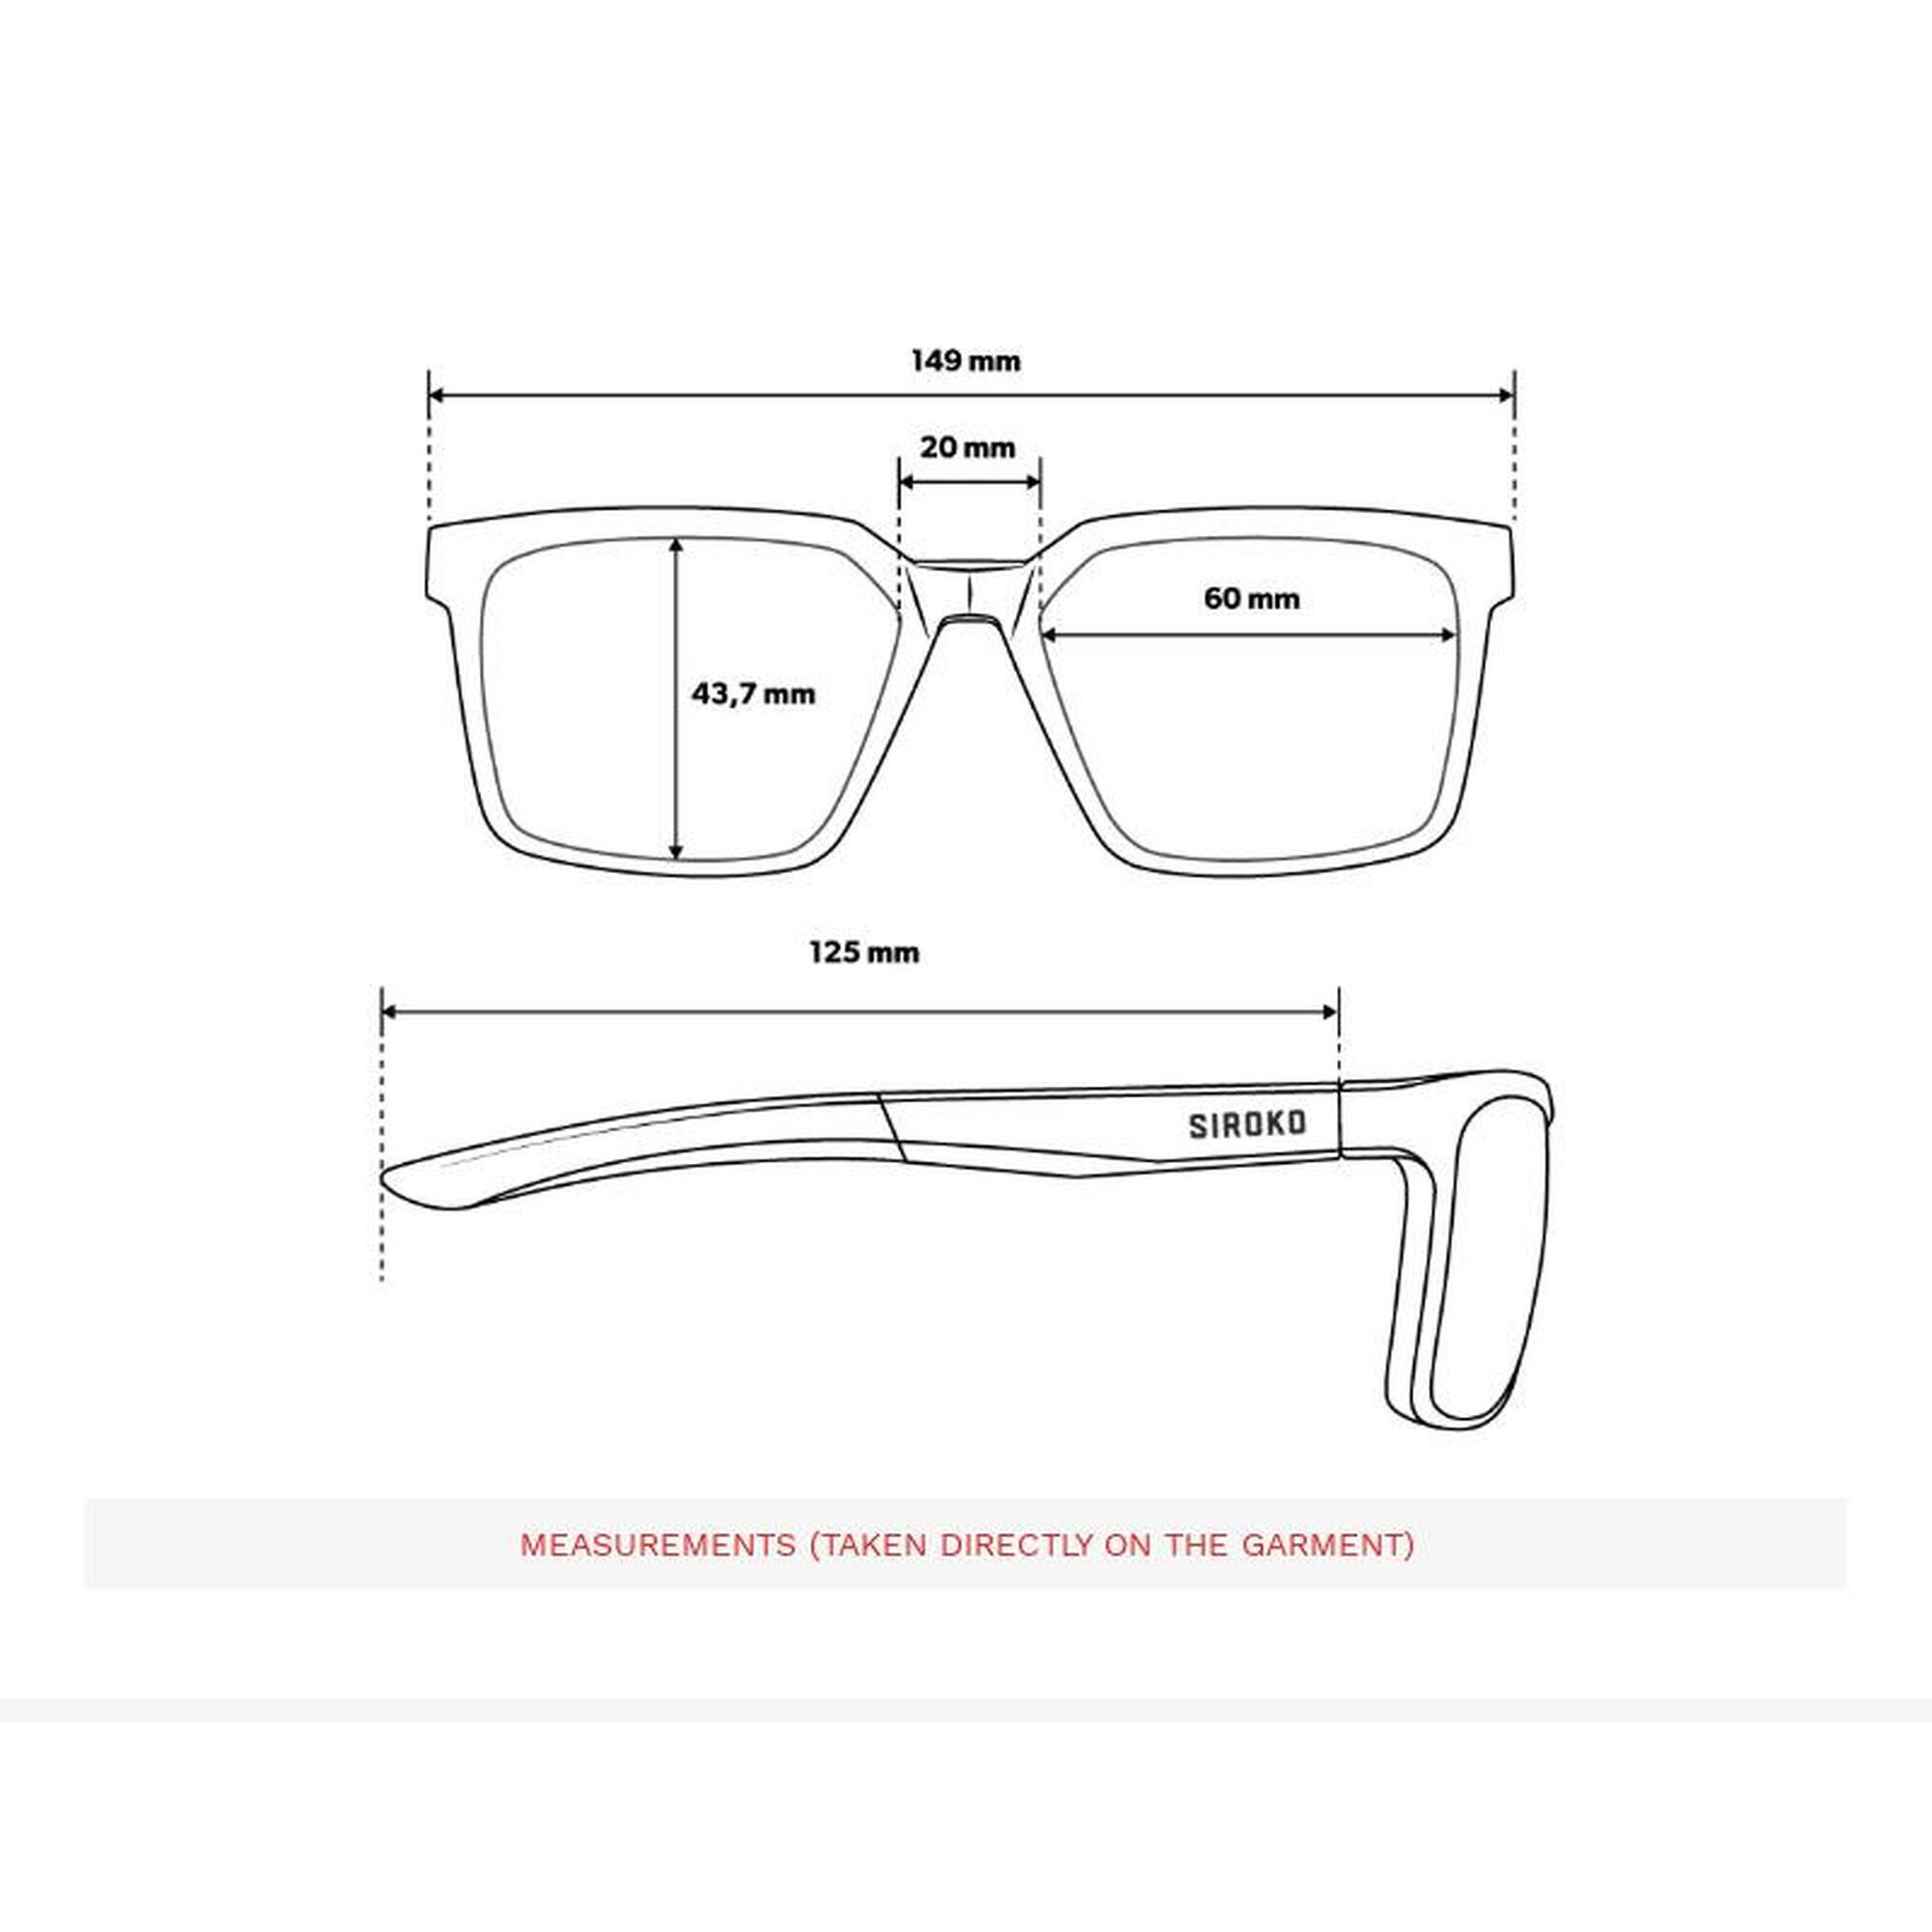 Óculos fotocrómicos Premium Ciclismo Homem e mulher X1 Photochromic Aneto Pret